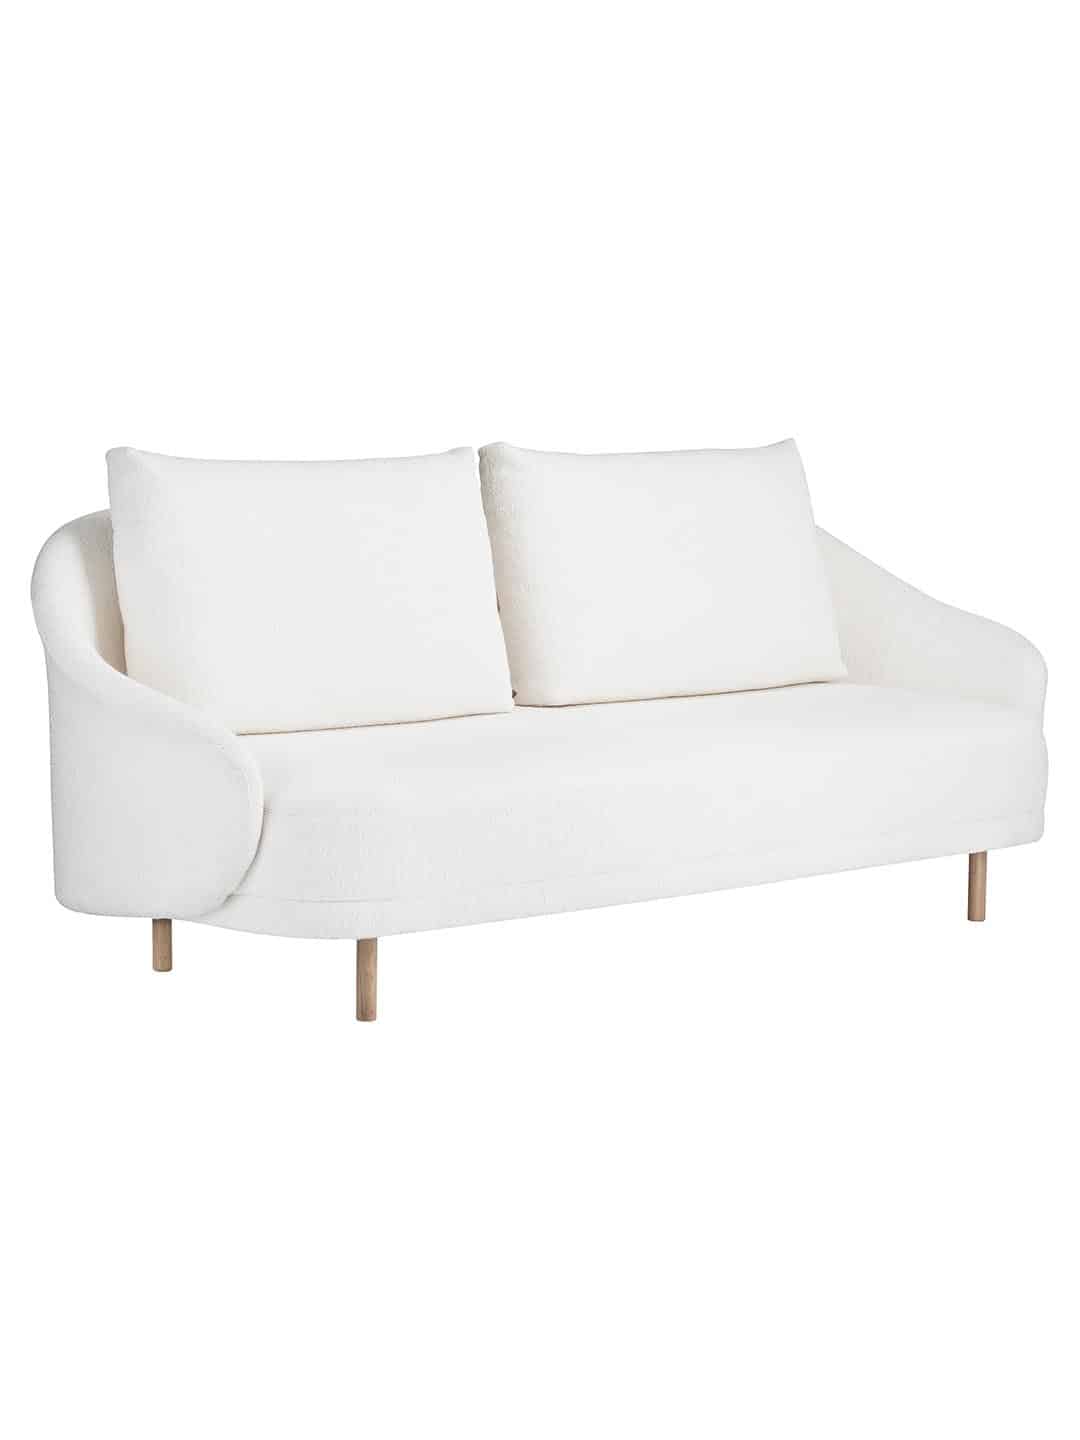 Минималистичный диван NORR11 New Wave 2-местный белого цвета